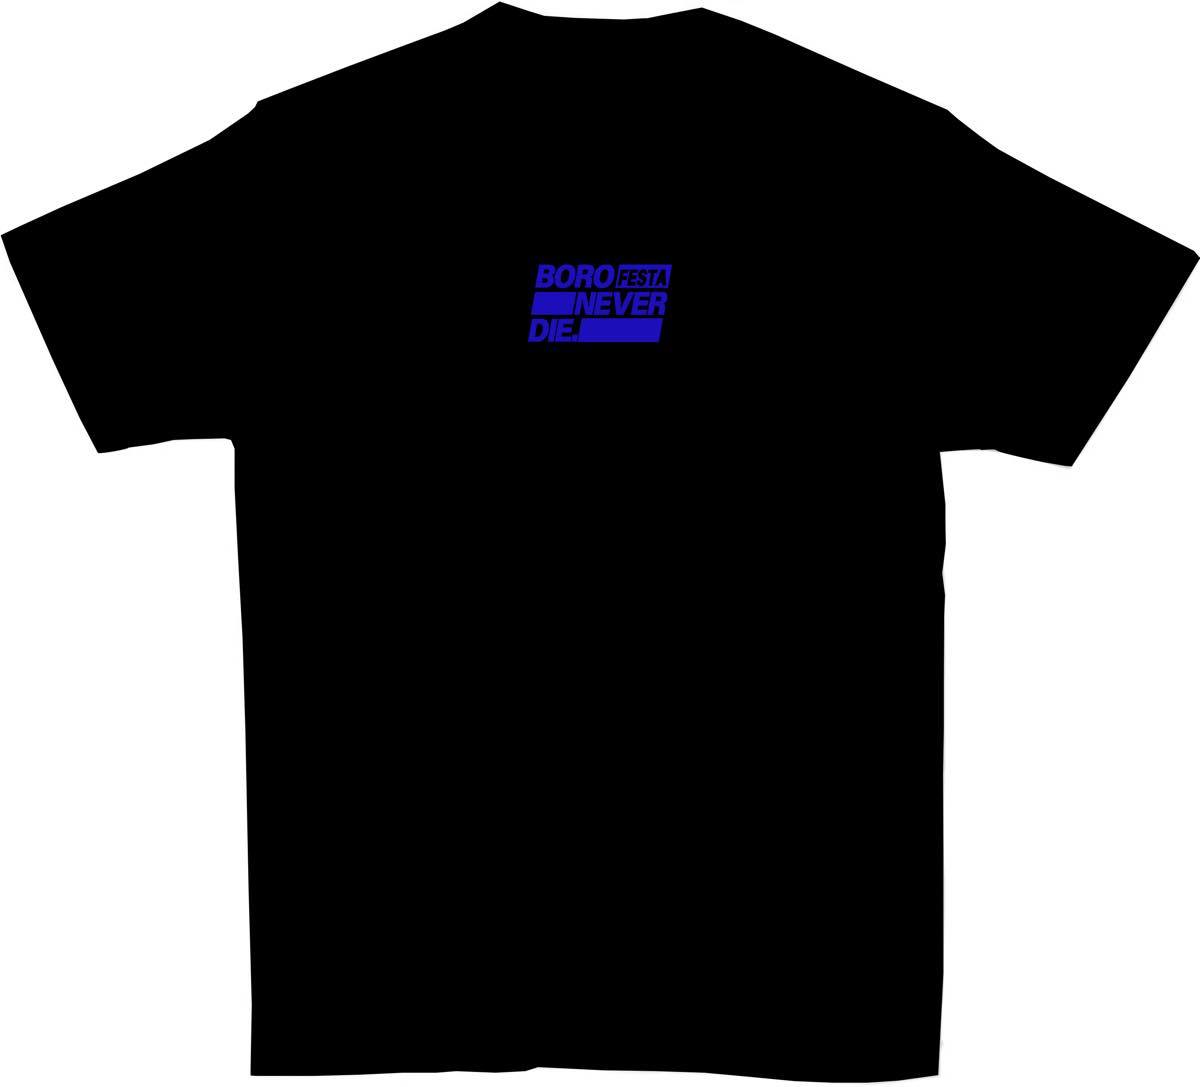 「ボロフェスタ2020」オフィシャルTシャツ・黒